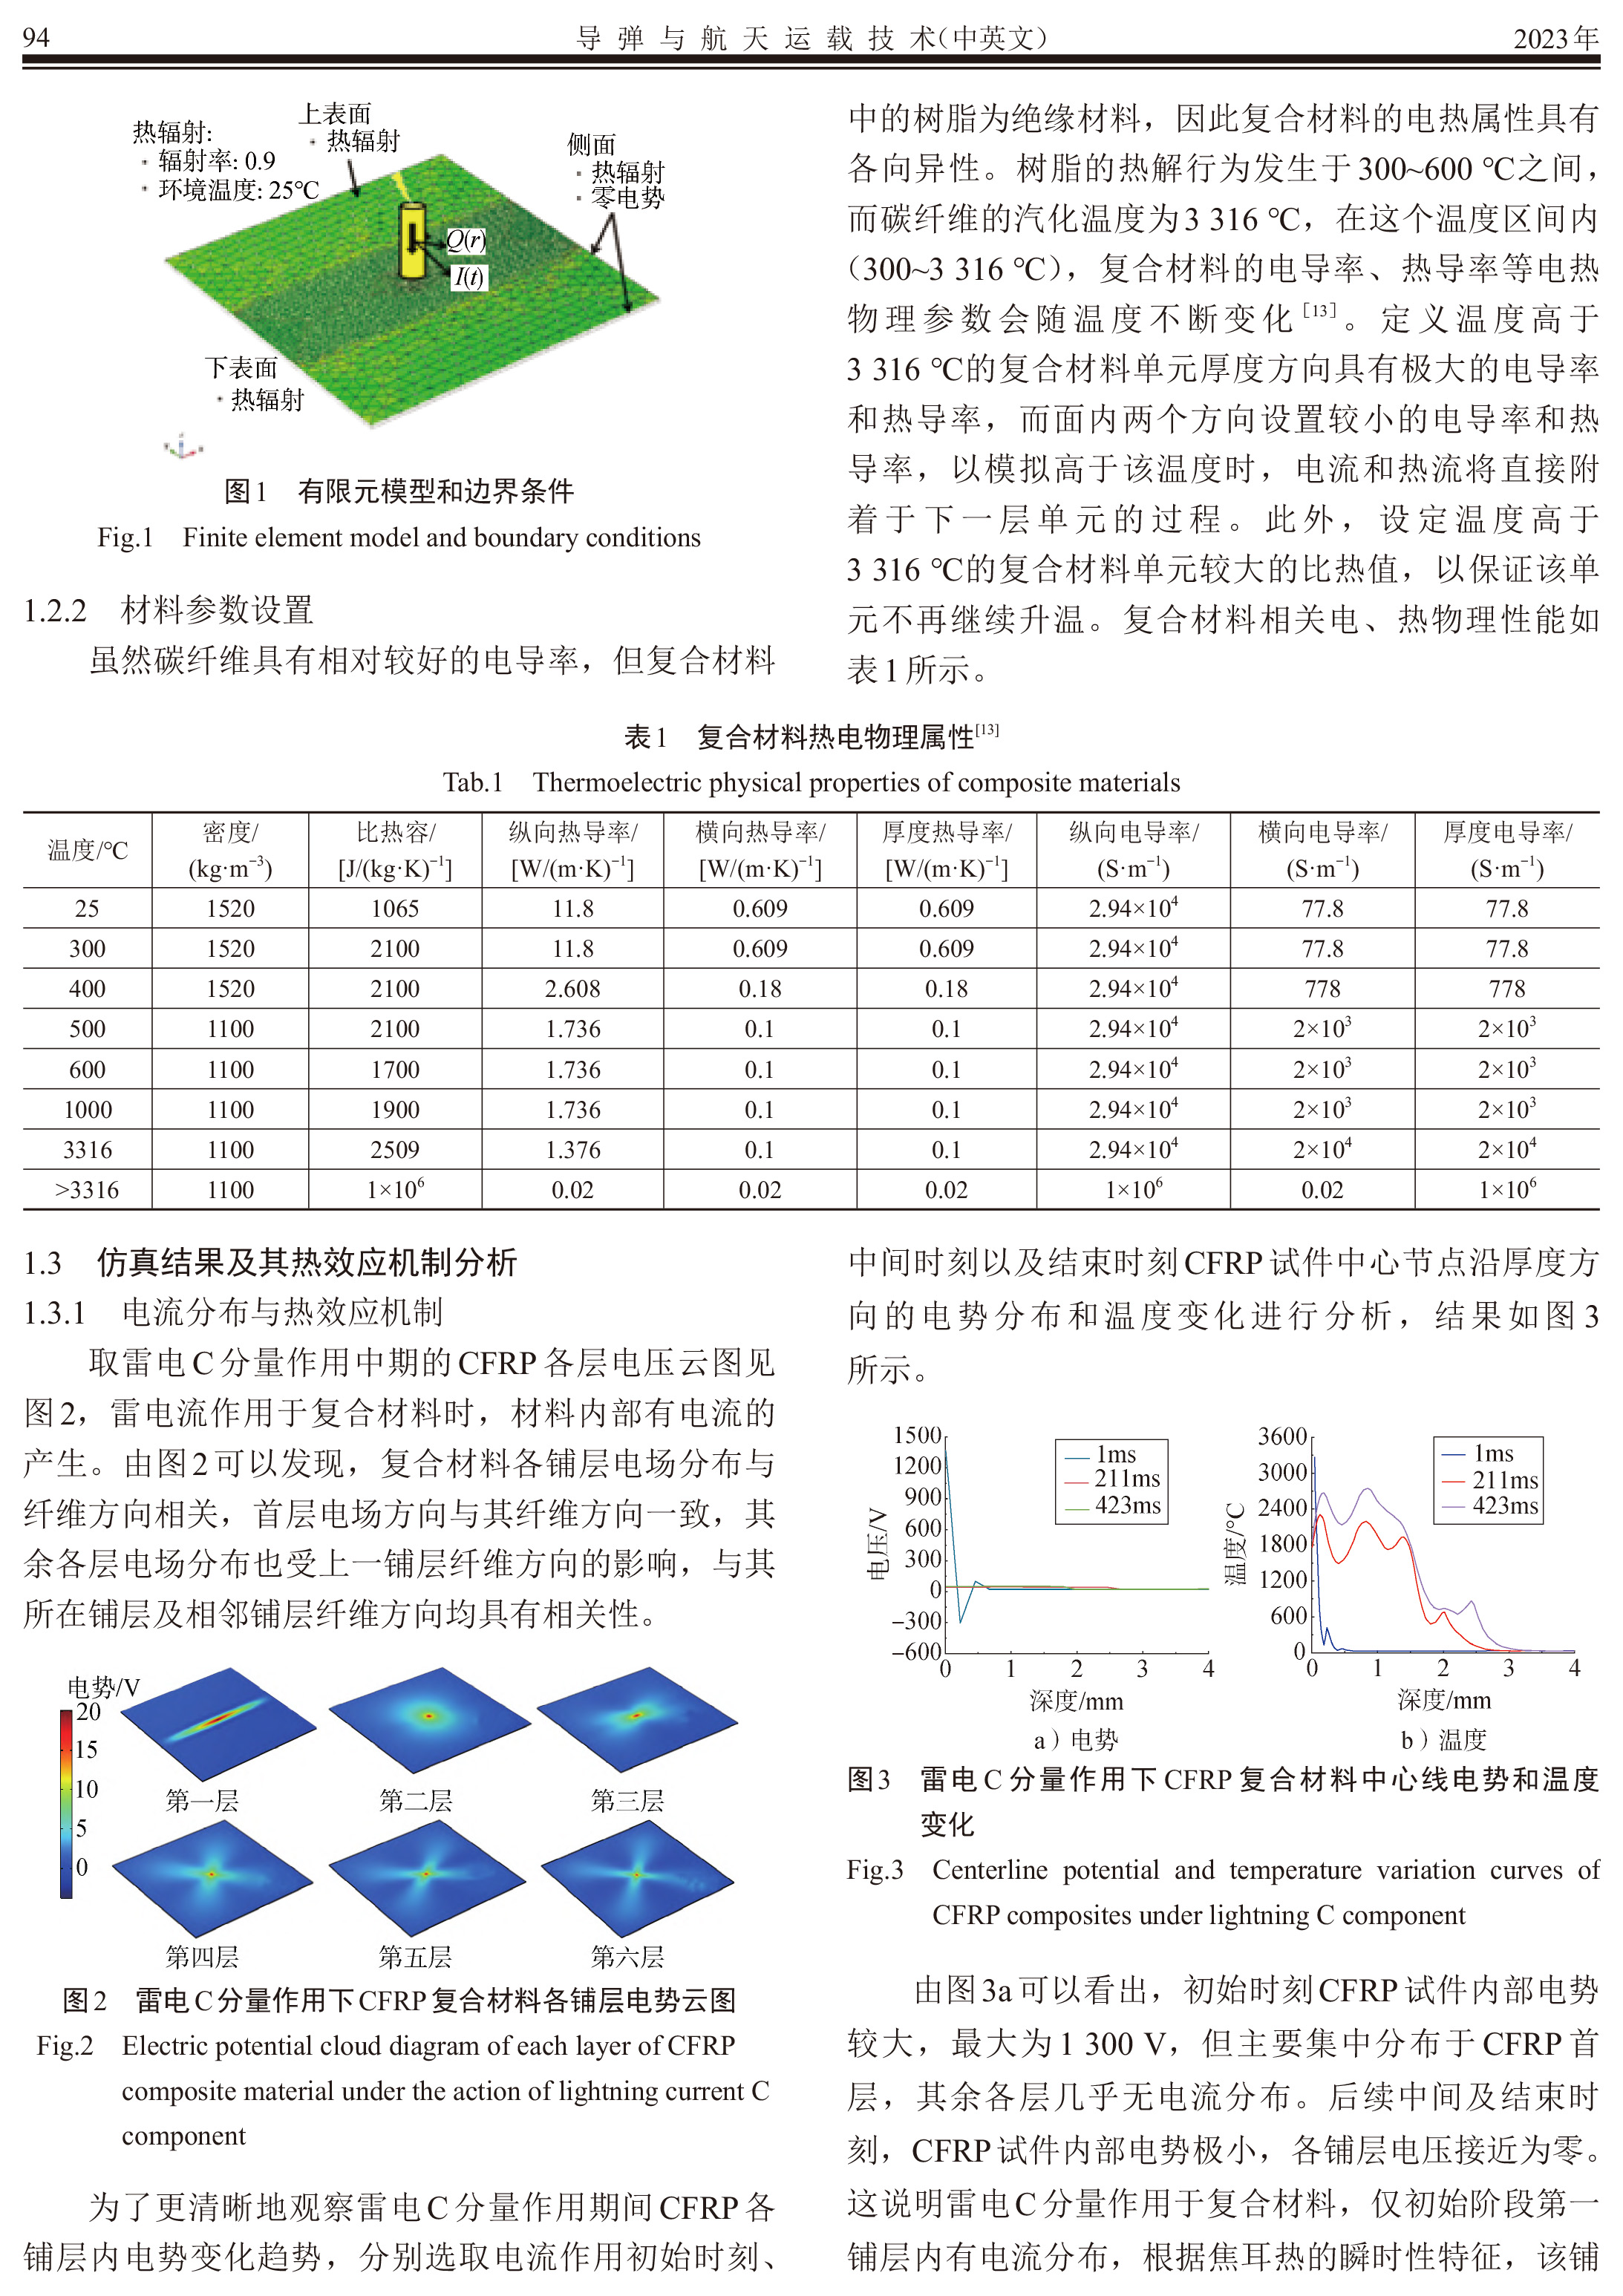 雷电C分量对碳纤维增强复合材料的热损伤研究_朱雪蒙-3.jpg